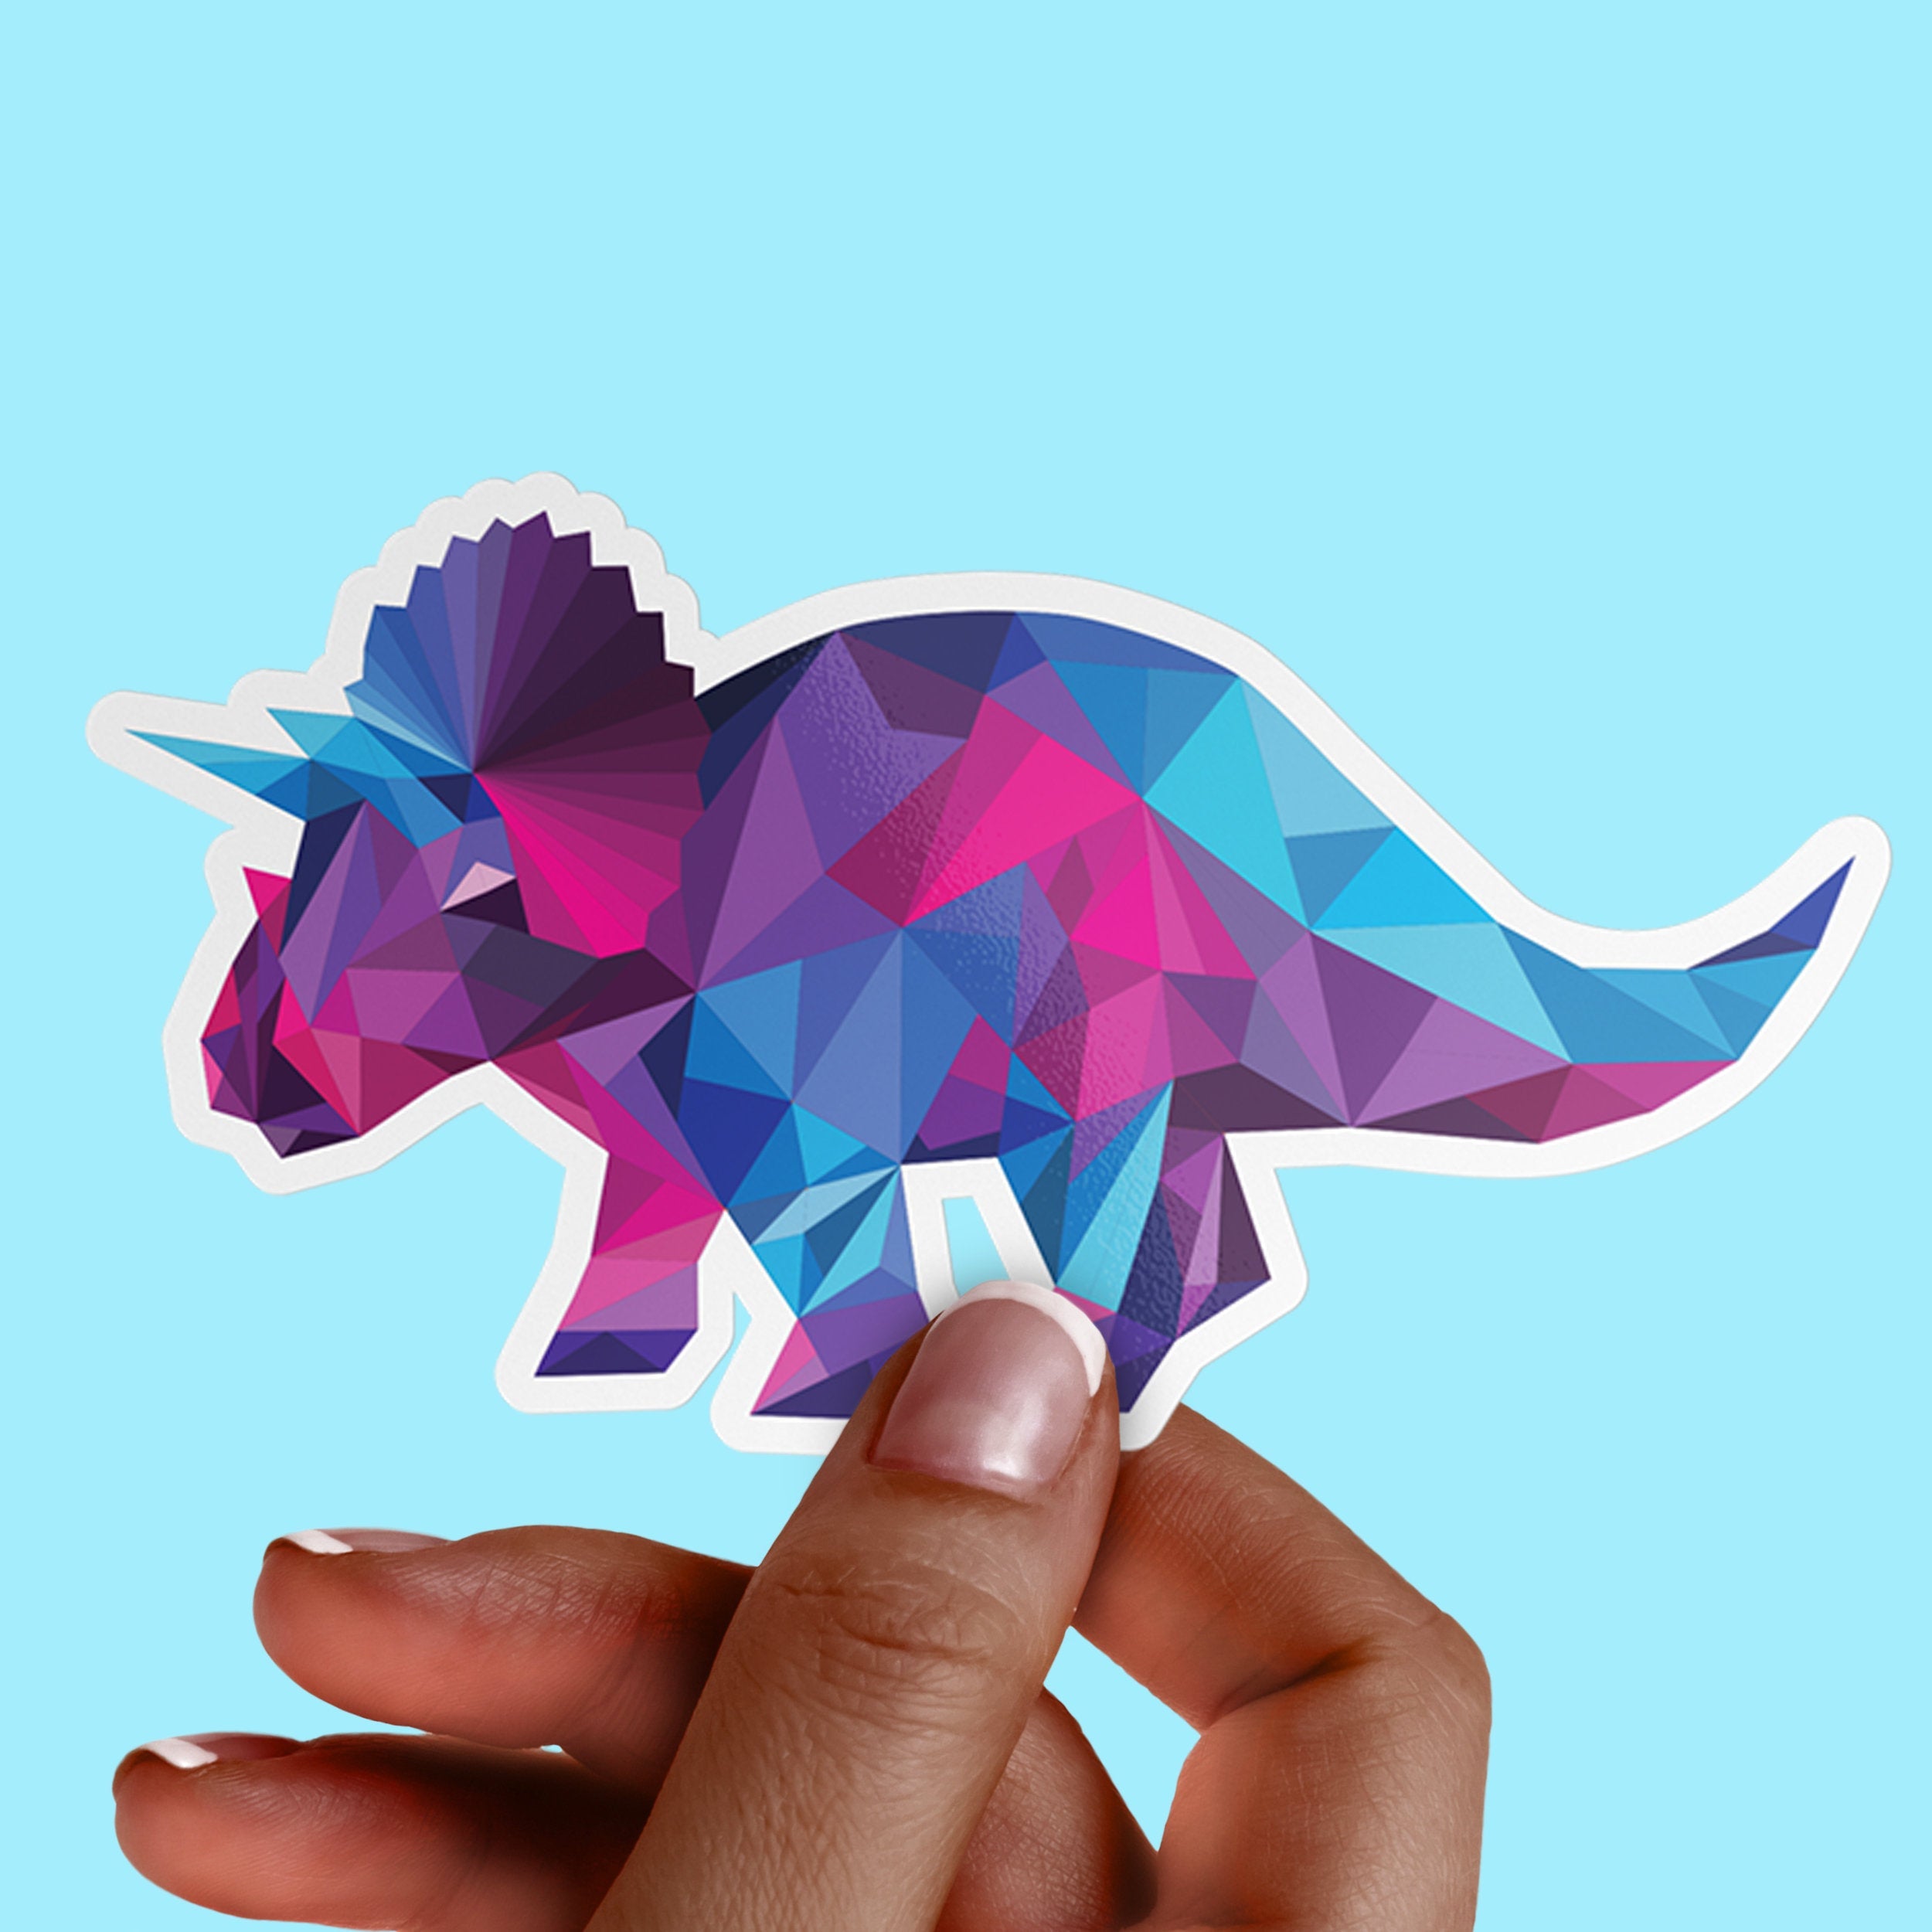 Dinosaur Triceratops Premium Vinyl Sticker, Water Bottle Sticker, Dinosaur Party Favors,  Laptop Decal